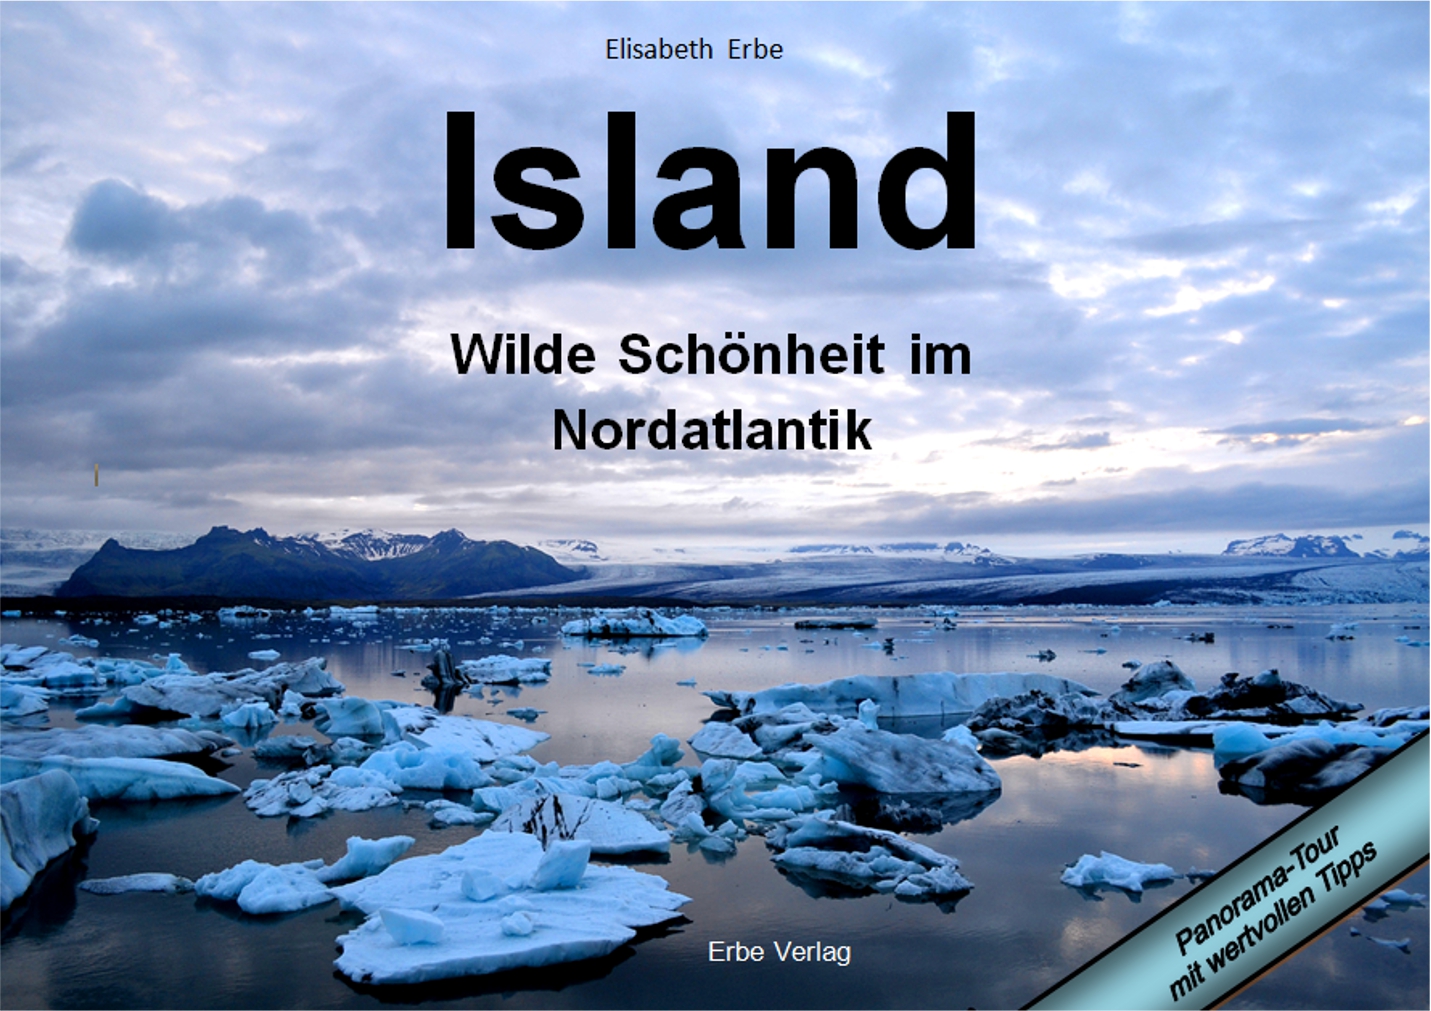 Island - Wilde Schöheit von Elisabeth Erbe